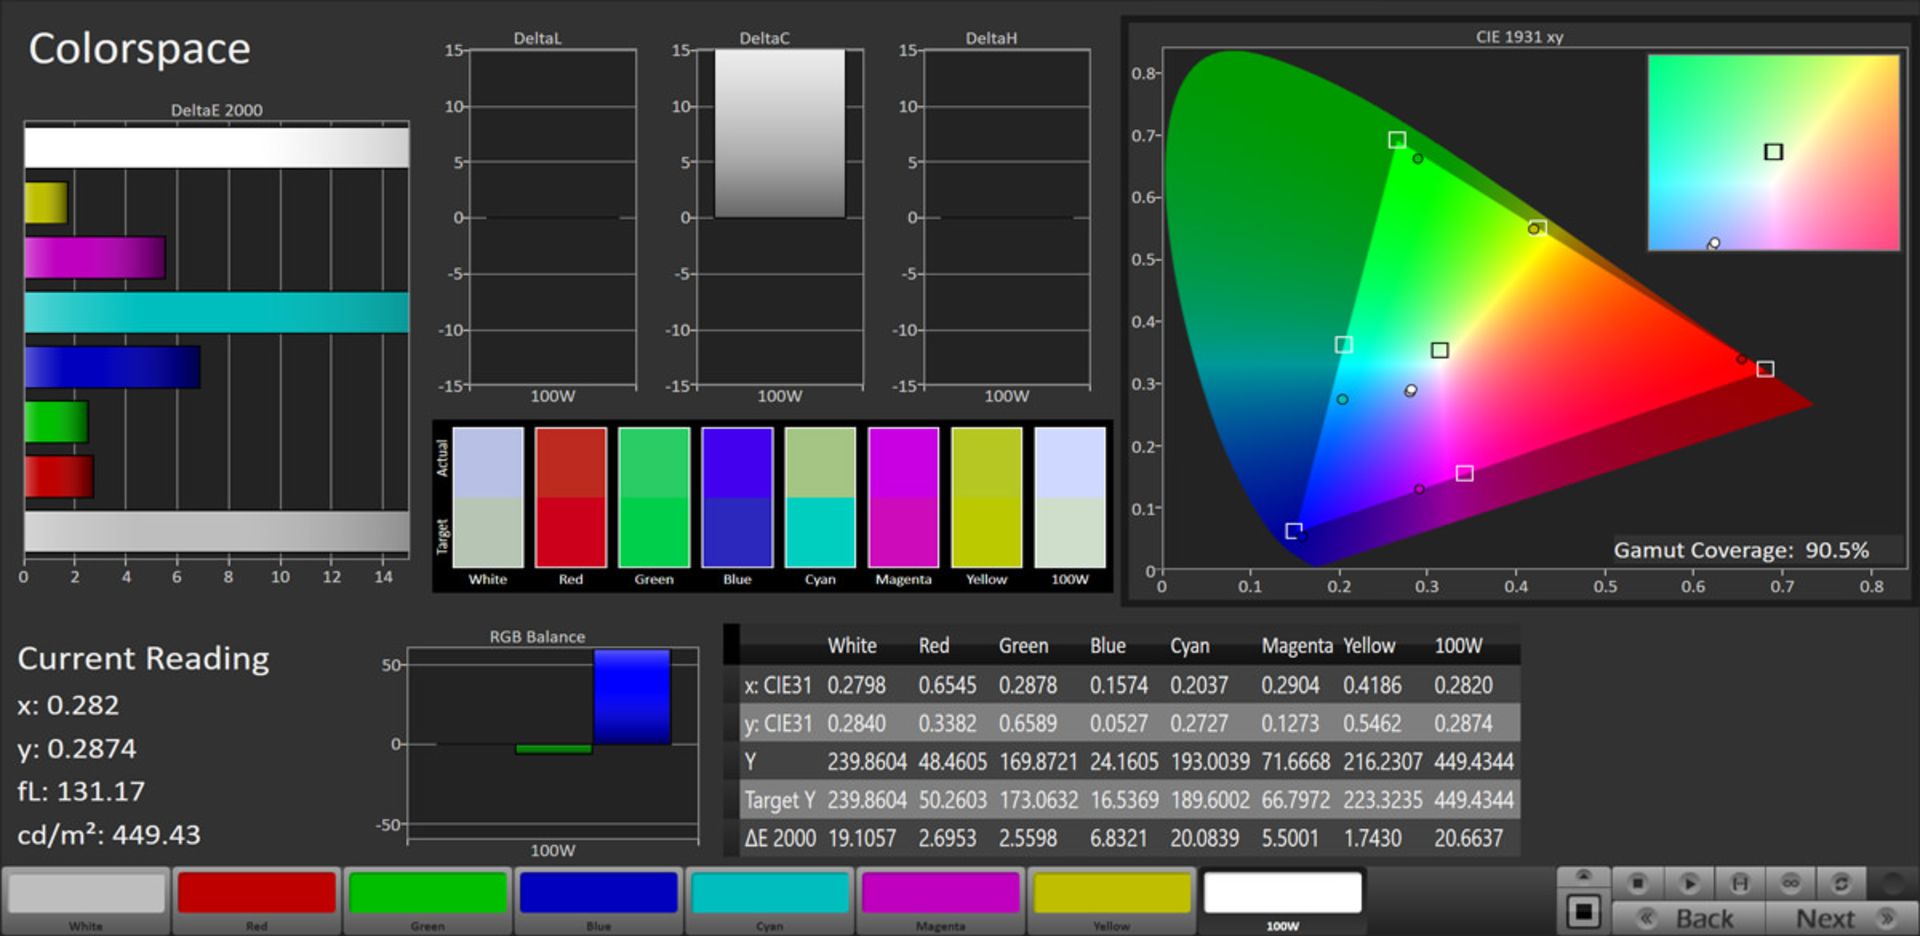 مرجع متخصصين ايران پوشش رنگي در حالت Vivid و فضاي DCI-P3 - آنر ۹ ايكس پرو